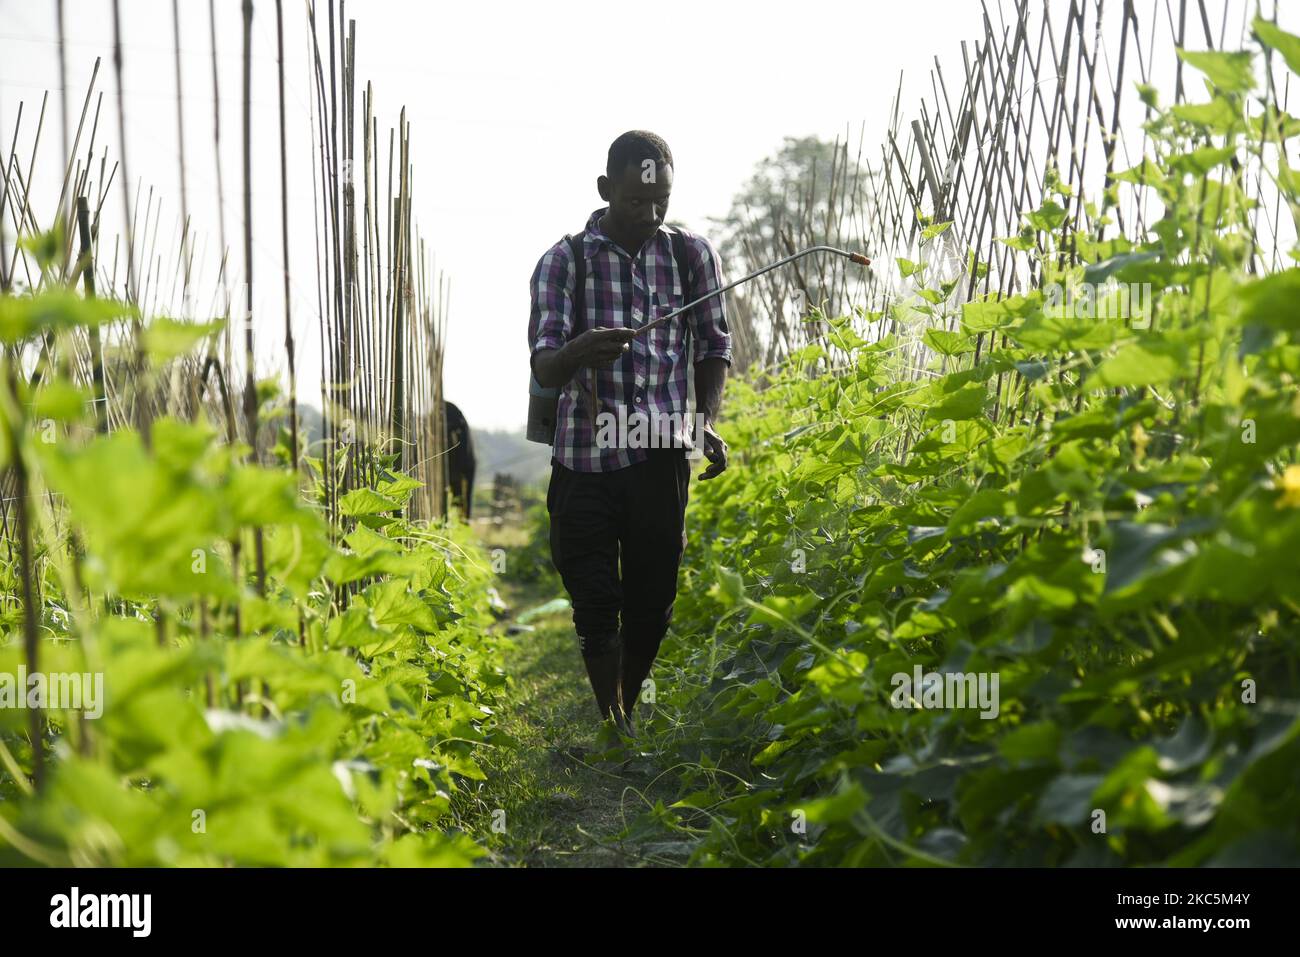 Agricoltore che irrorano pesticidi o medicinali in un allevamento di cetrioli, per uccidere insetti, a Barpeta, India, il 11 dicembre 2020. (Foto di David Talukdar/NurPhoto) Foto Stock